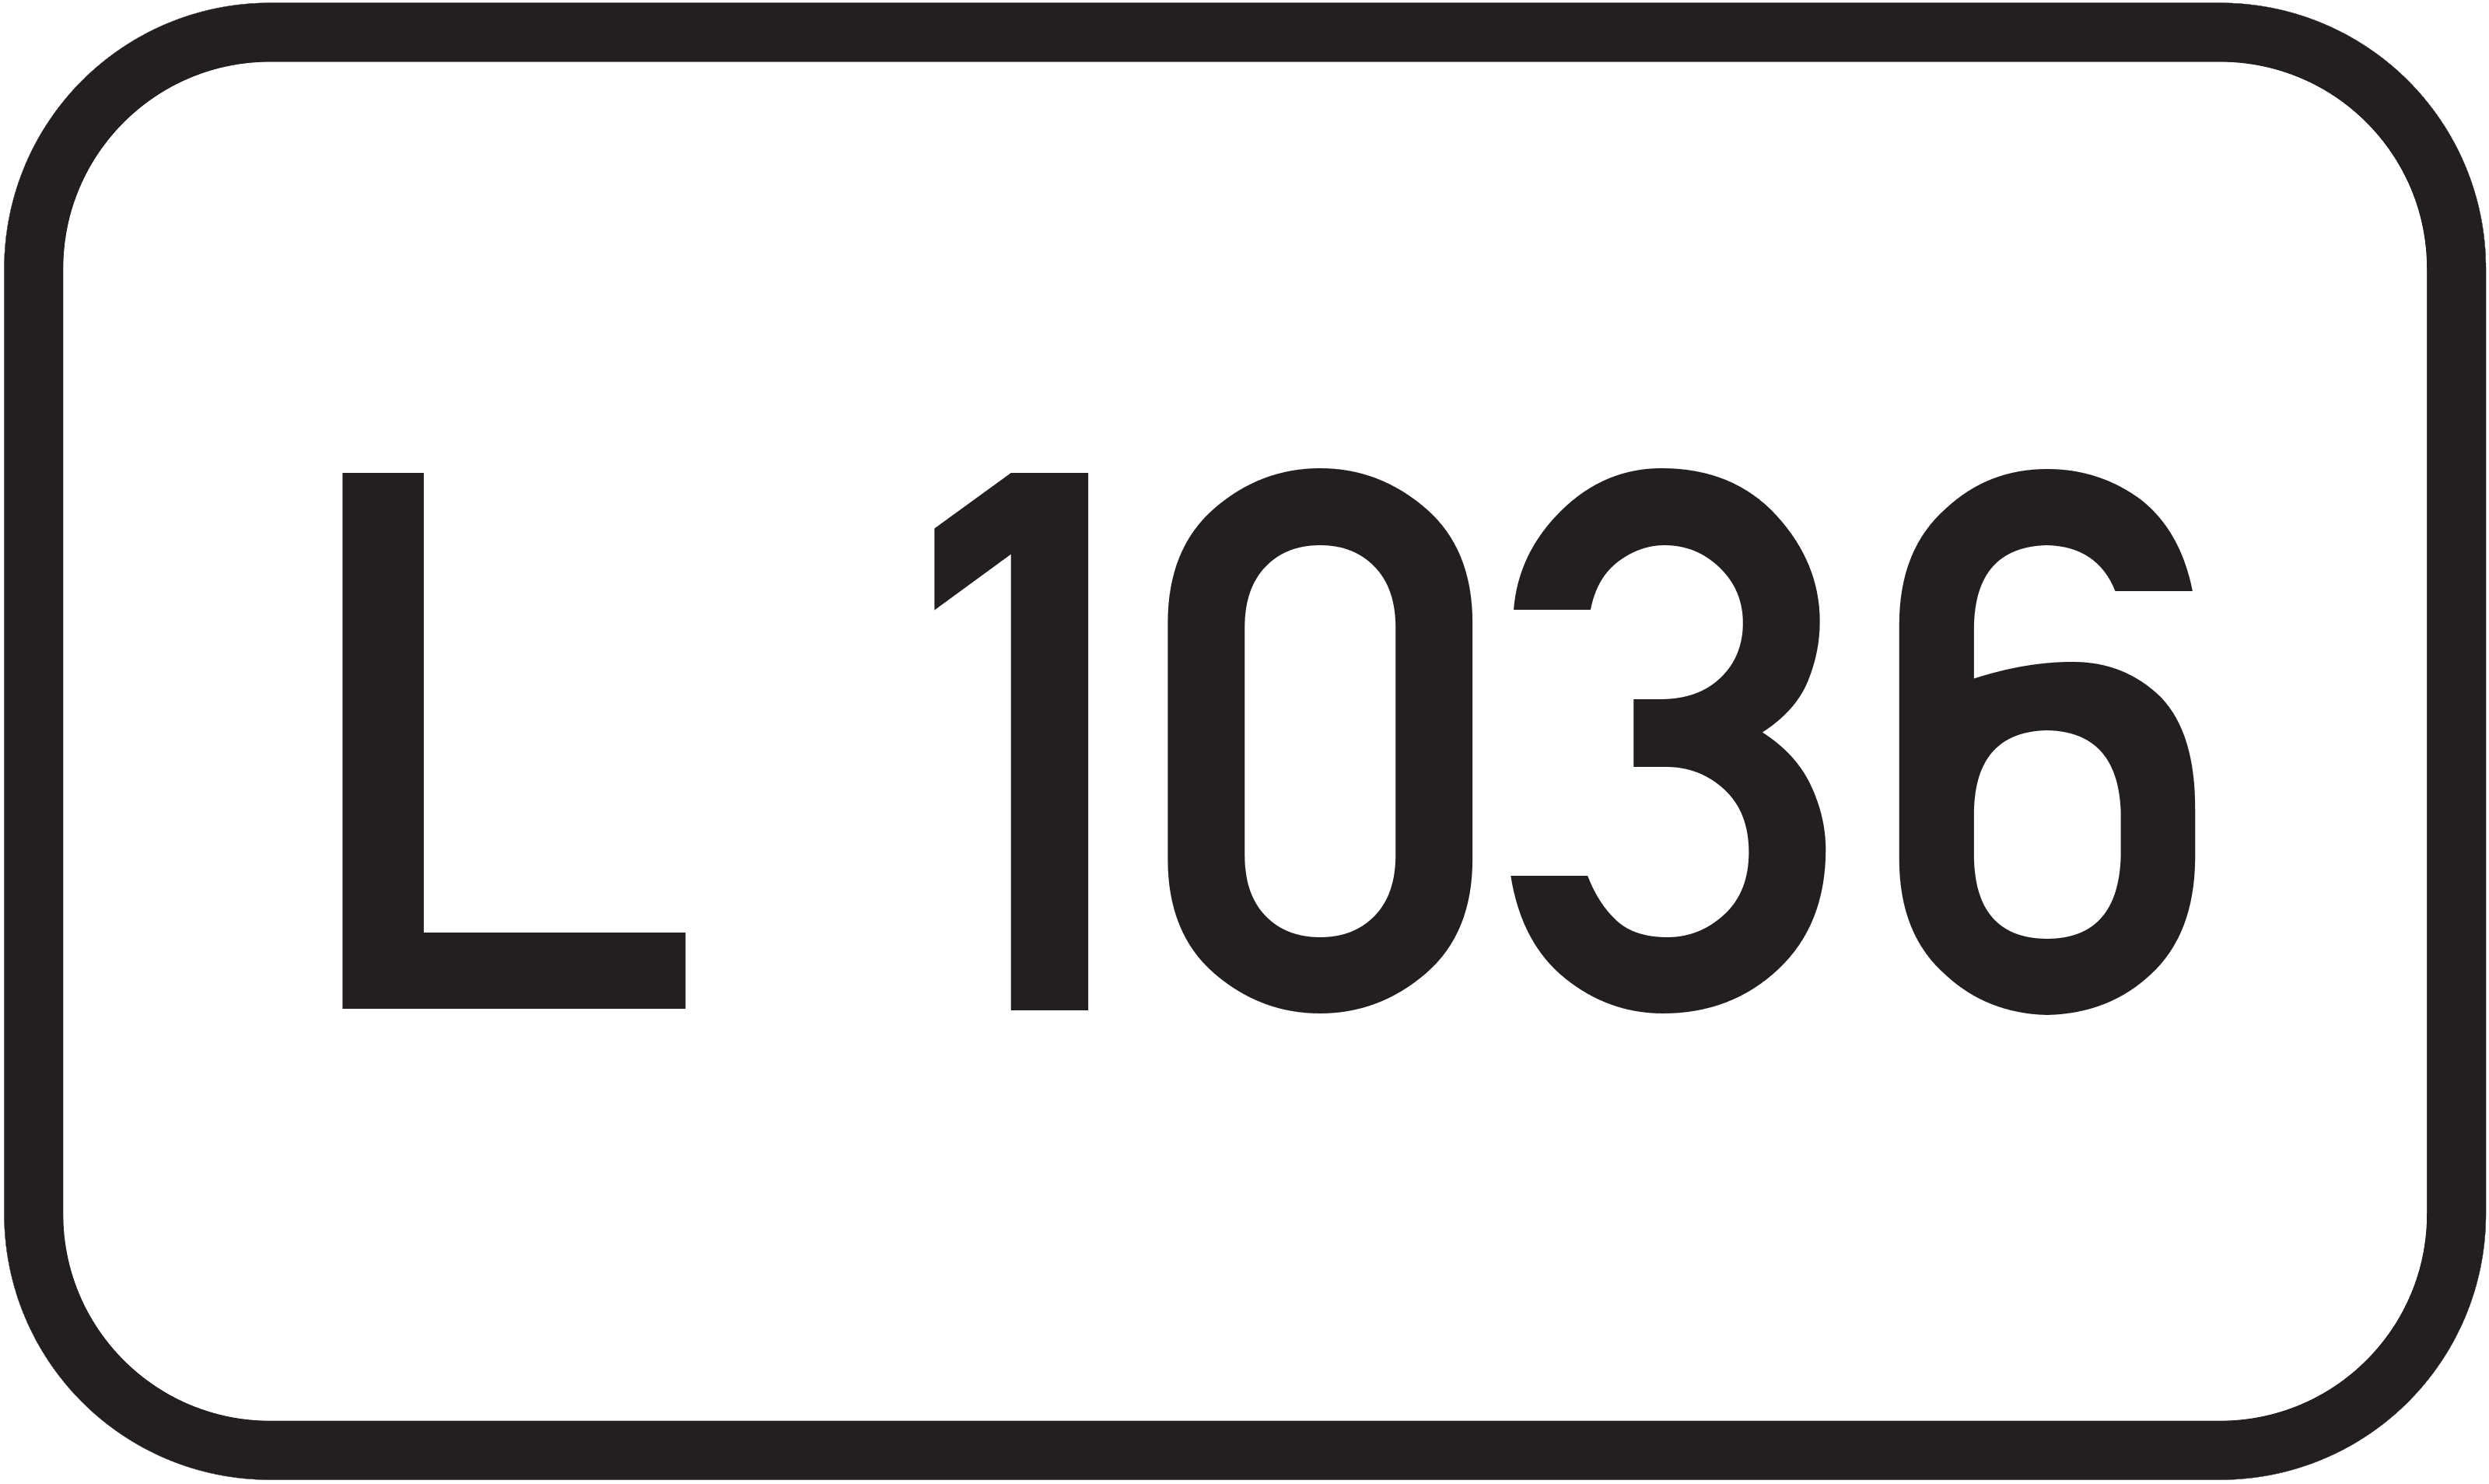 Landesstraße L 1036